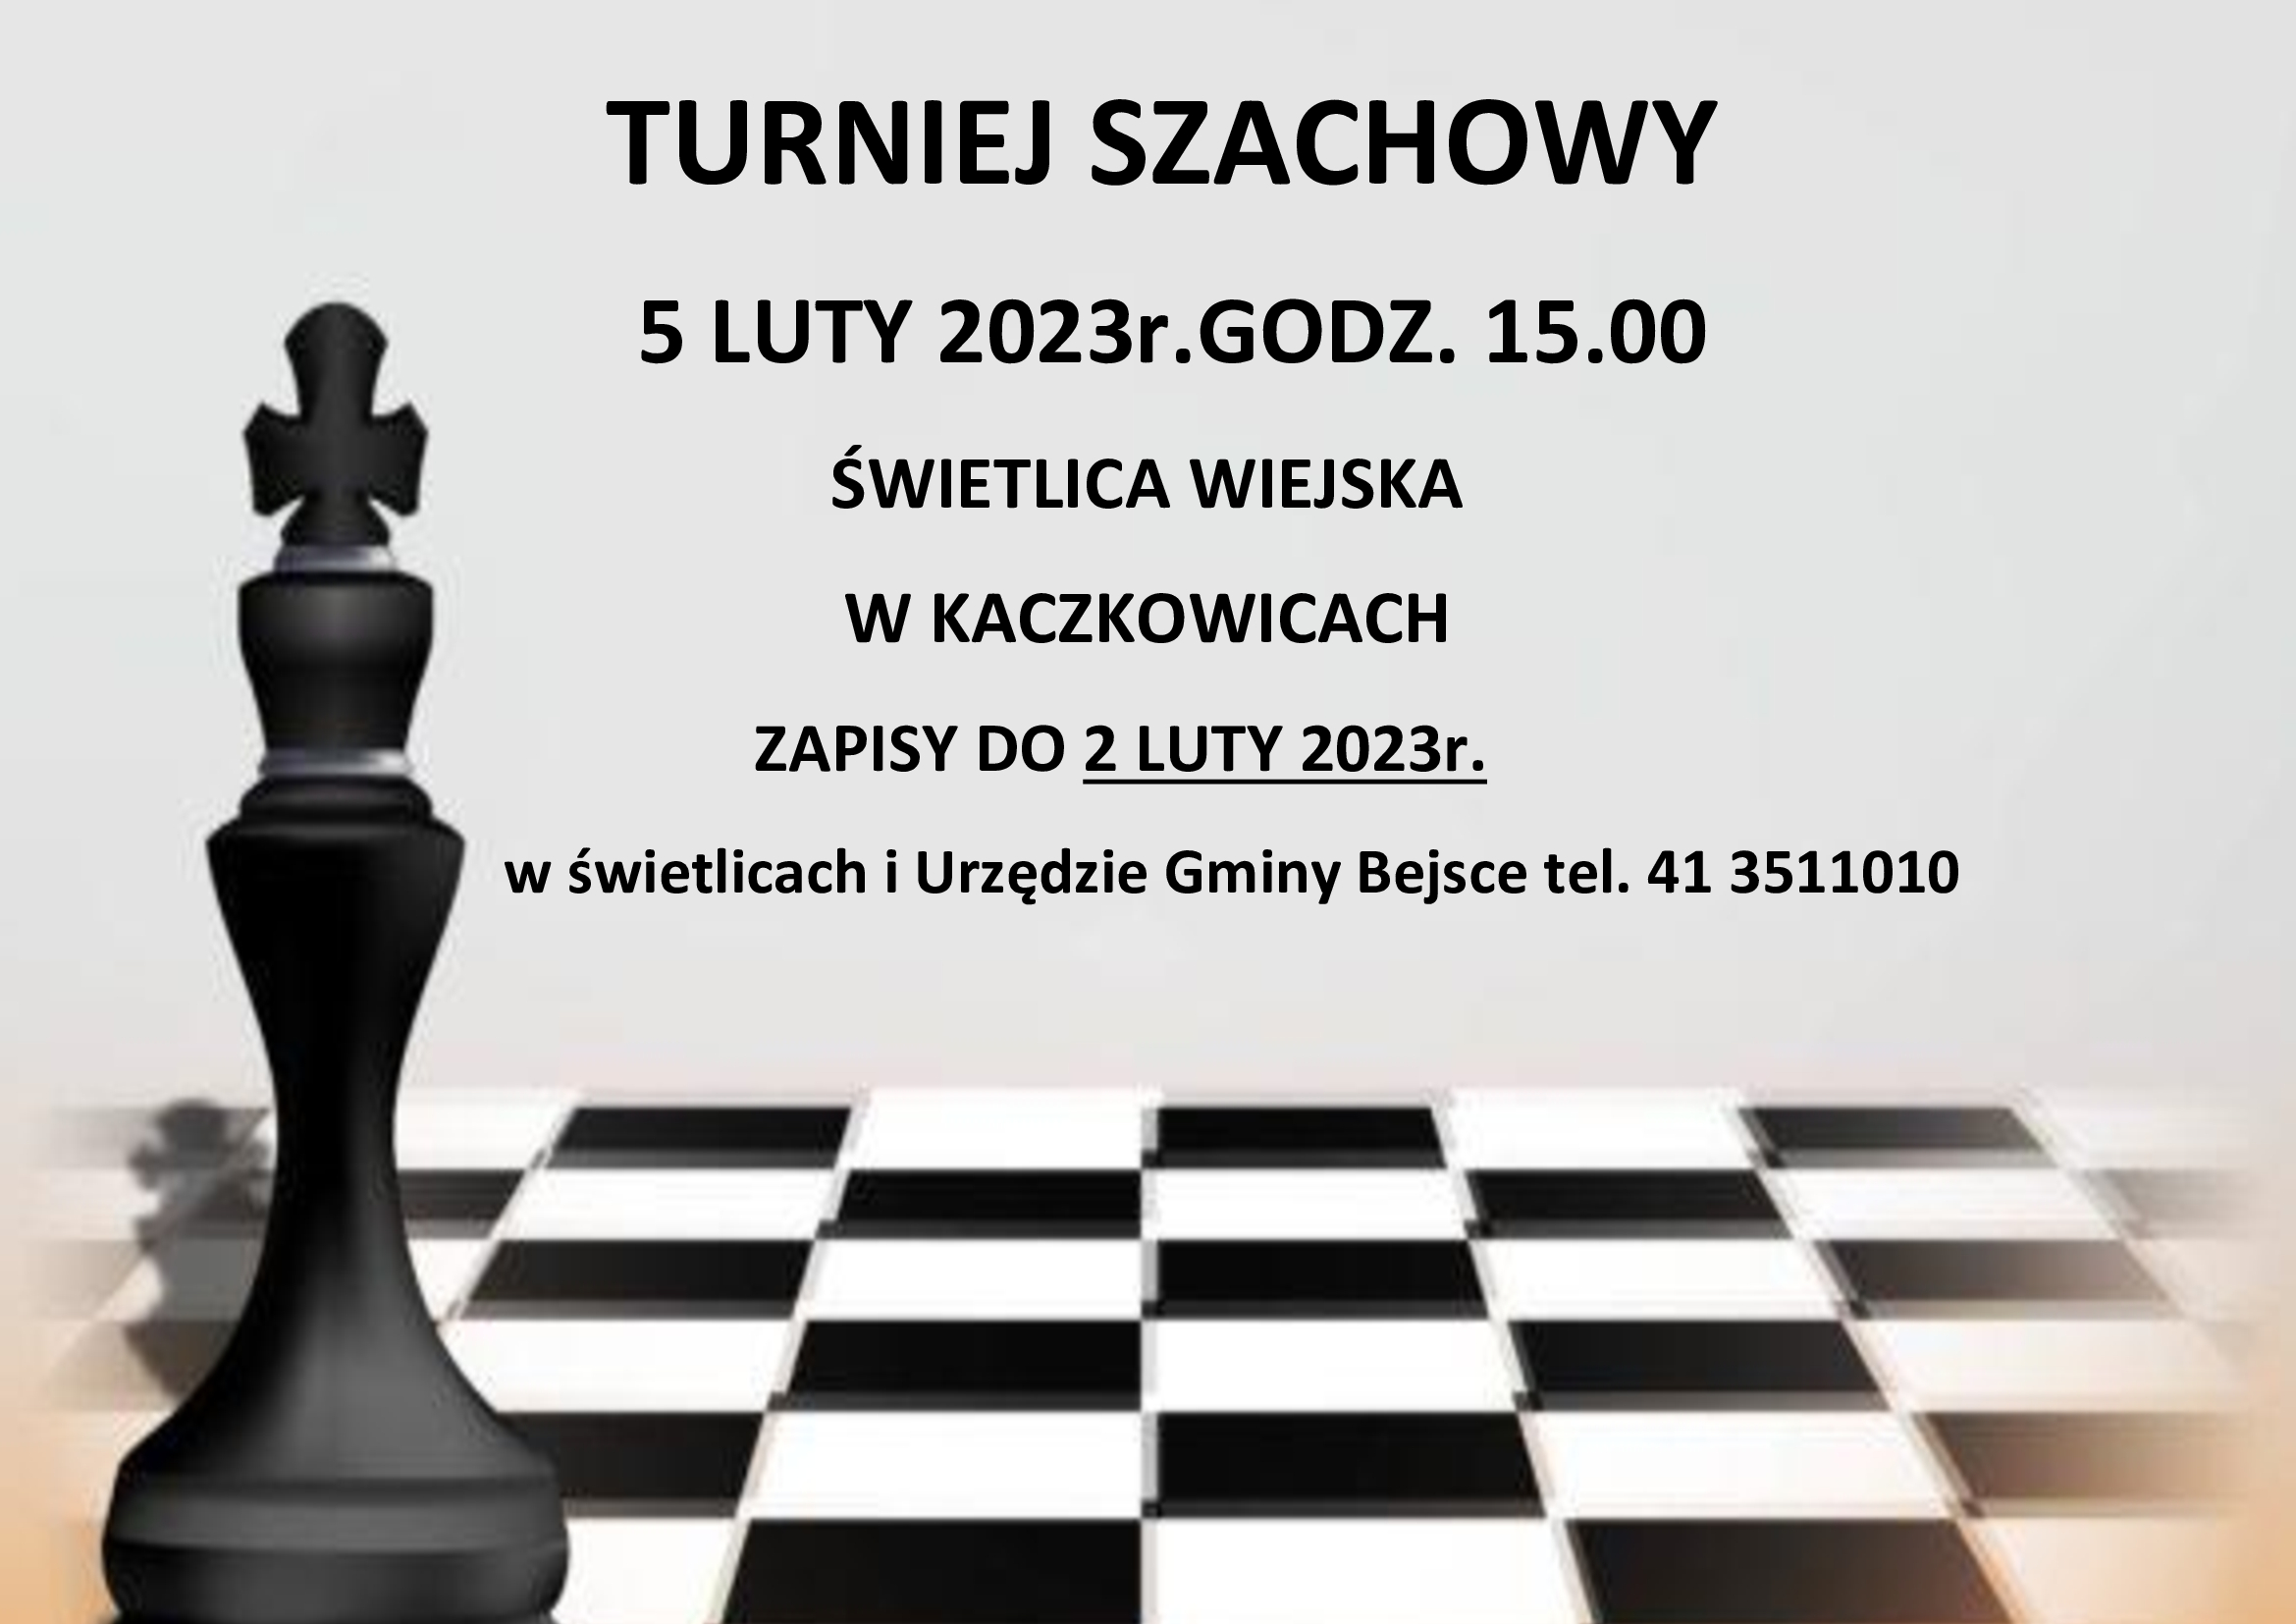 zaproszenie-na-turniej-szachowy-oficjalny-serwis-internetowy